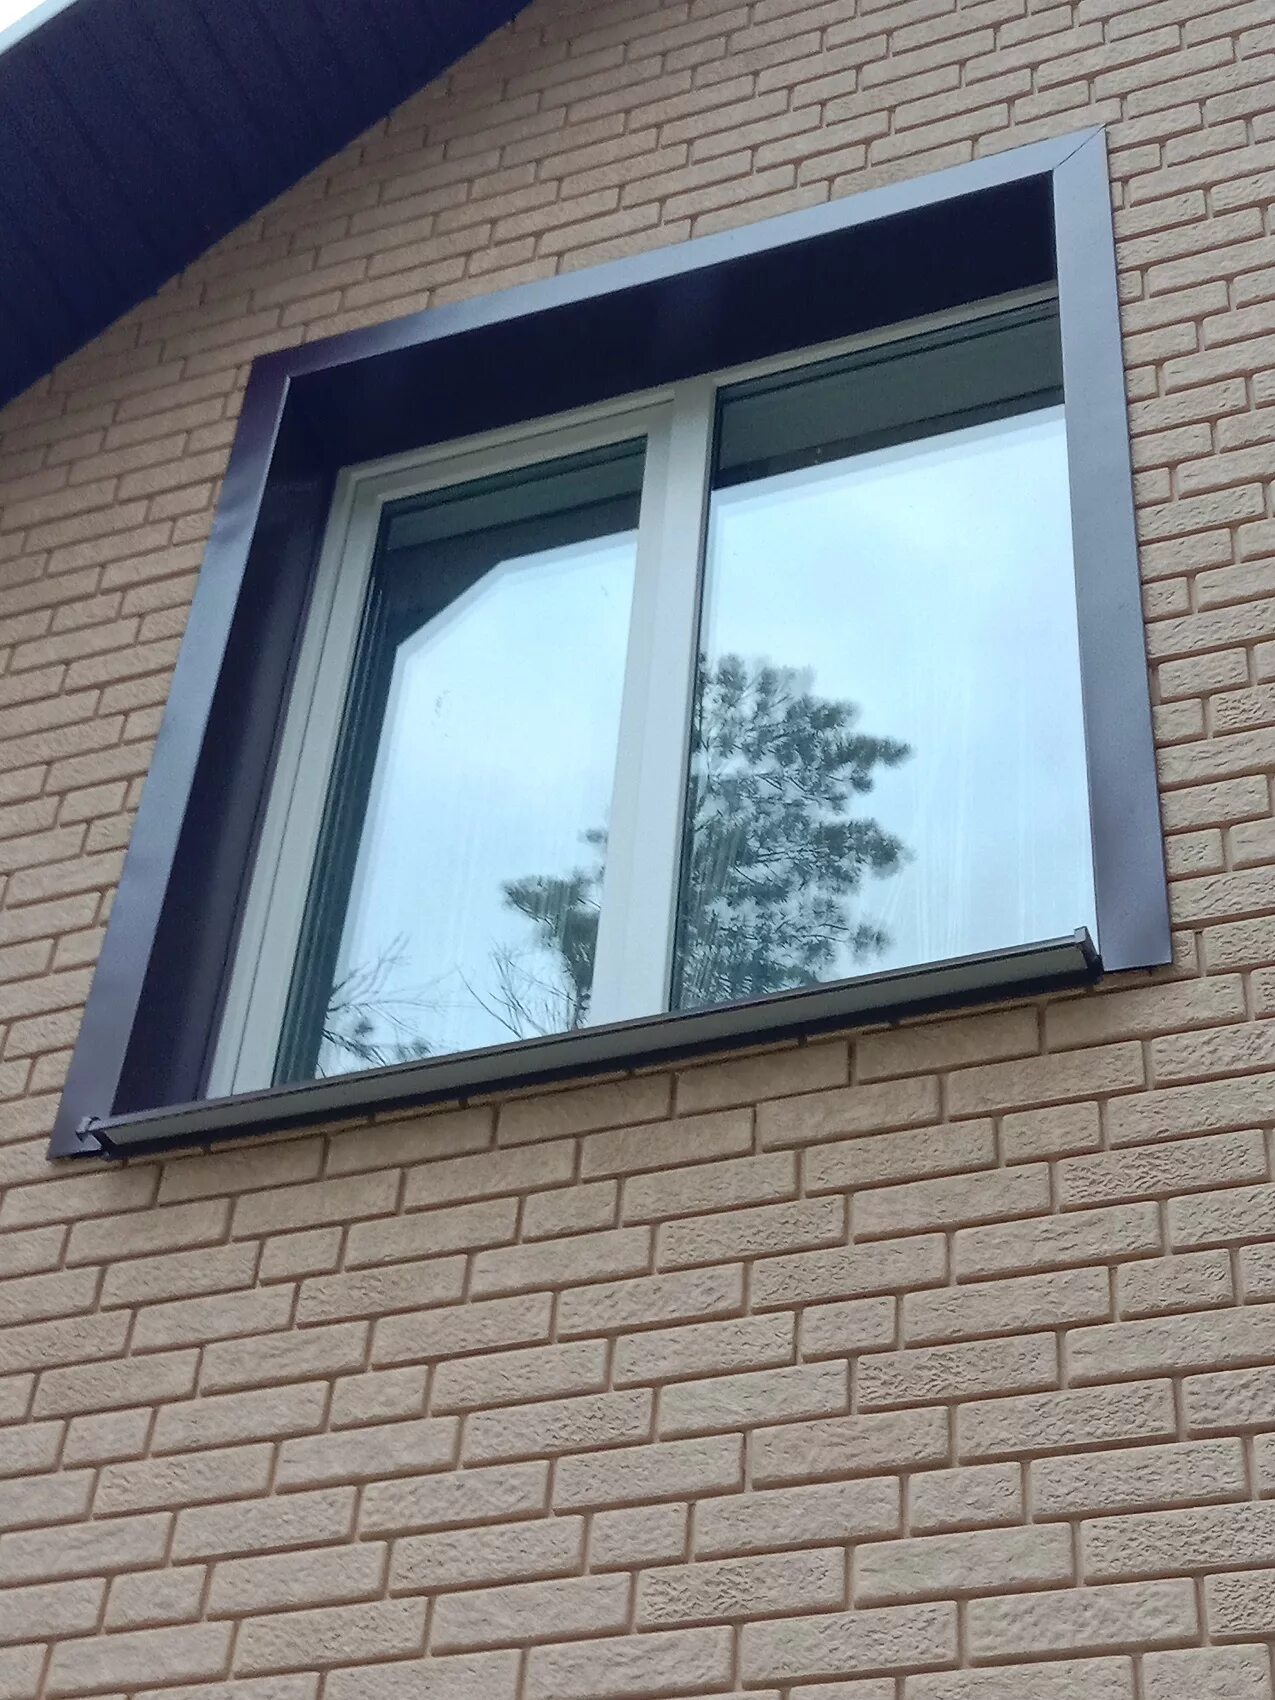 Металлические откосы на окнах наружные. Откосы на окна наружные металлические. Наружные откосы для пластиковых окон из металла. Откосы из металла на окна наружные. Металлическое обрамление окон.